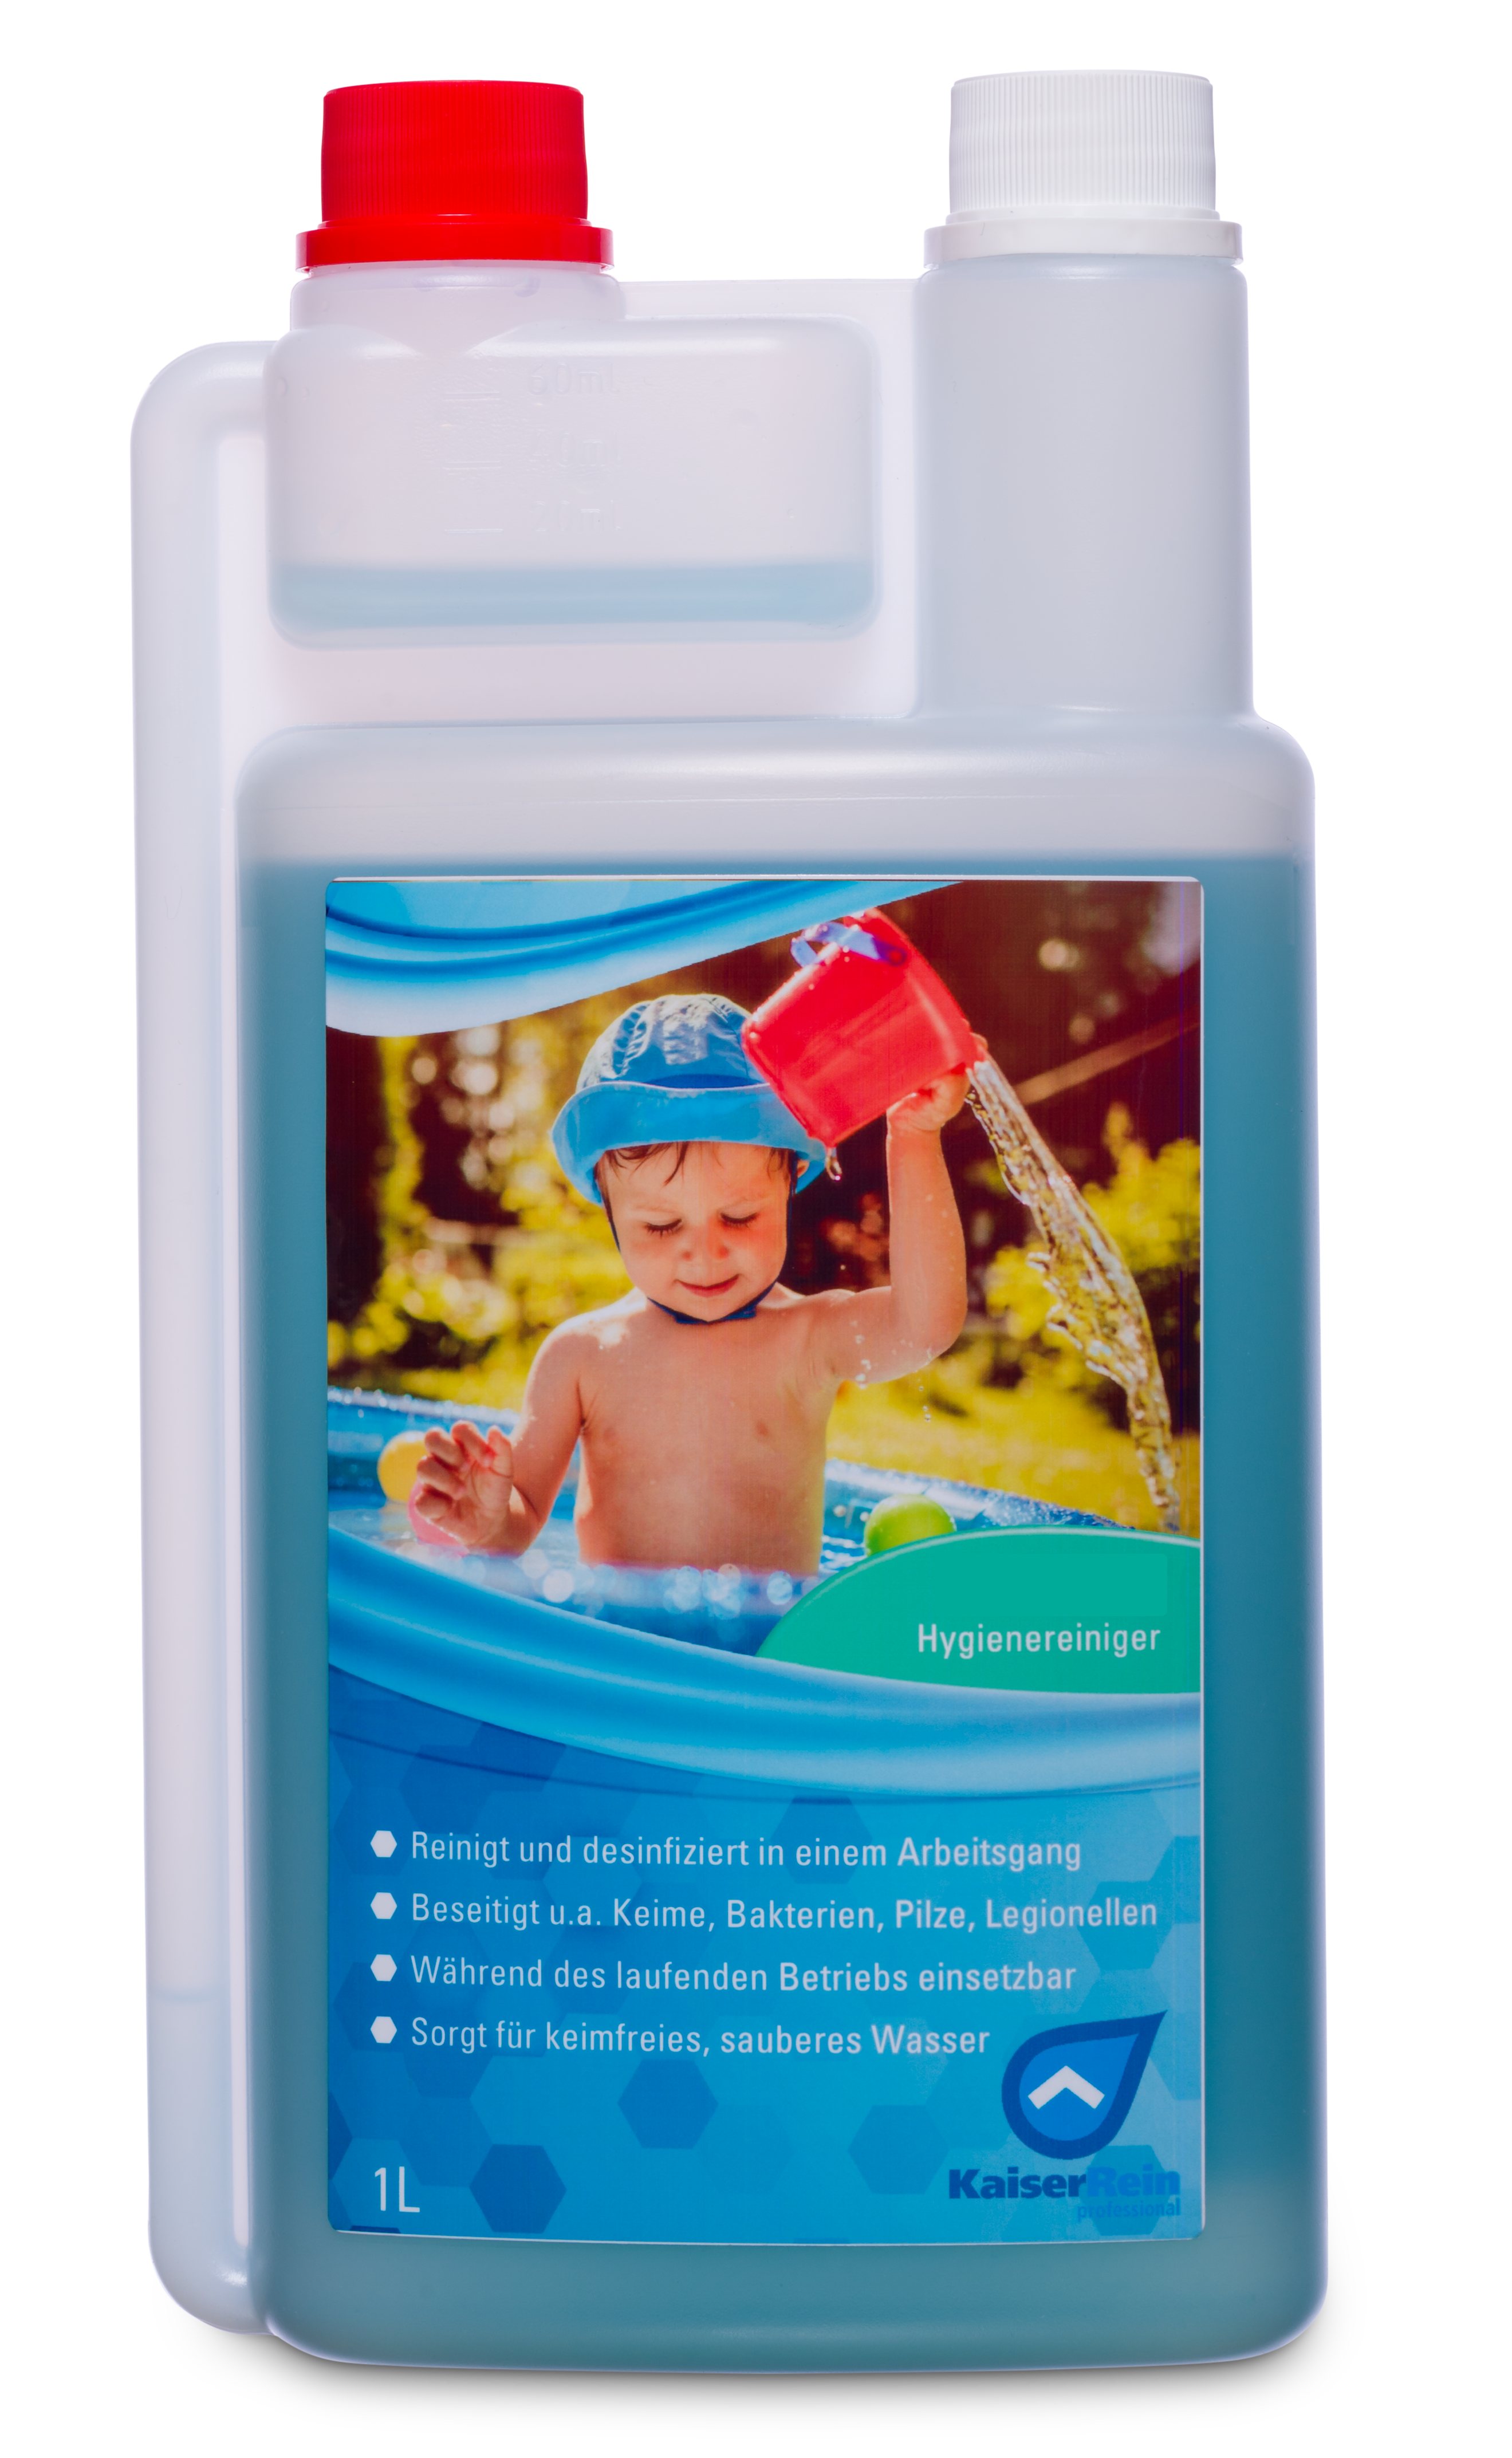  Planschbecken und Pool Desinfektion1 L Spezialprodukt zur Desinfektion und Reinigung von Kinder- Planschbecken